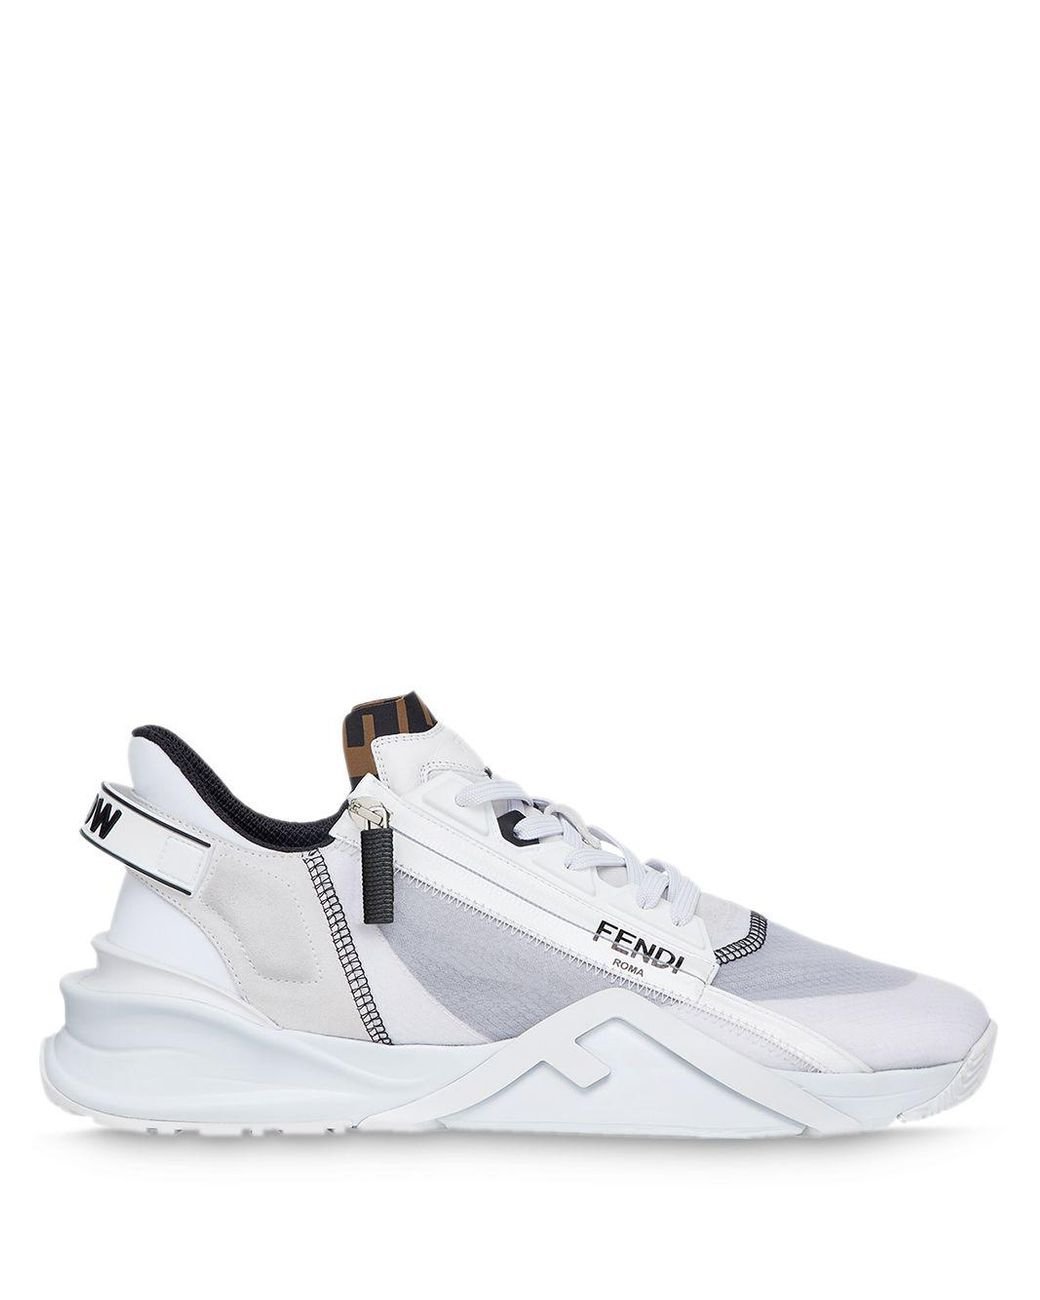 Fendi Zip Running Style Sneakers in White for Men | Lyst UK